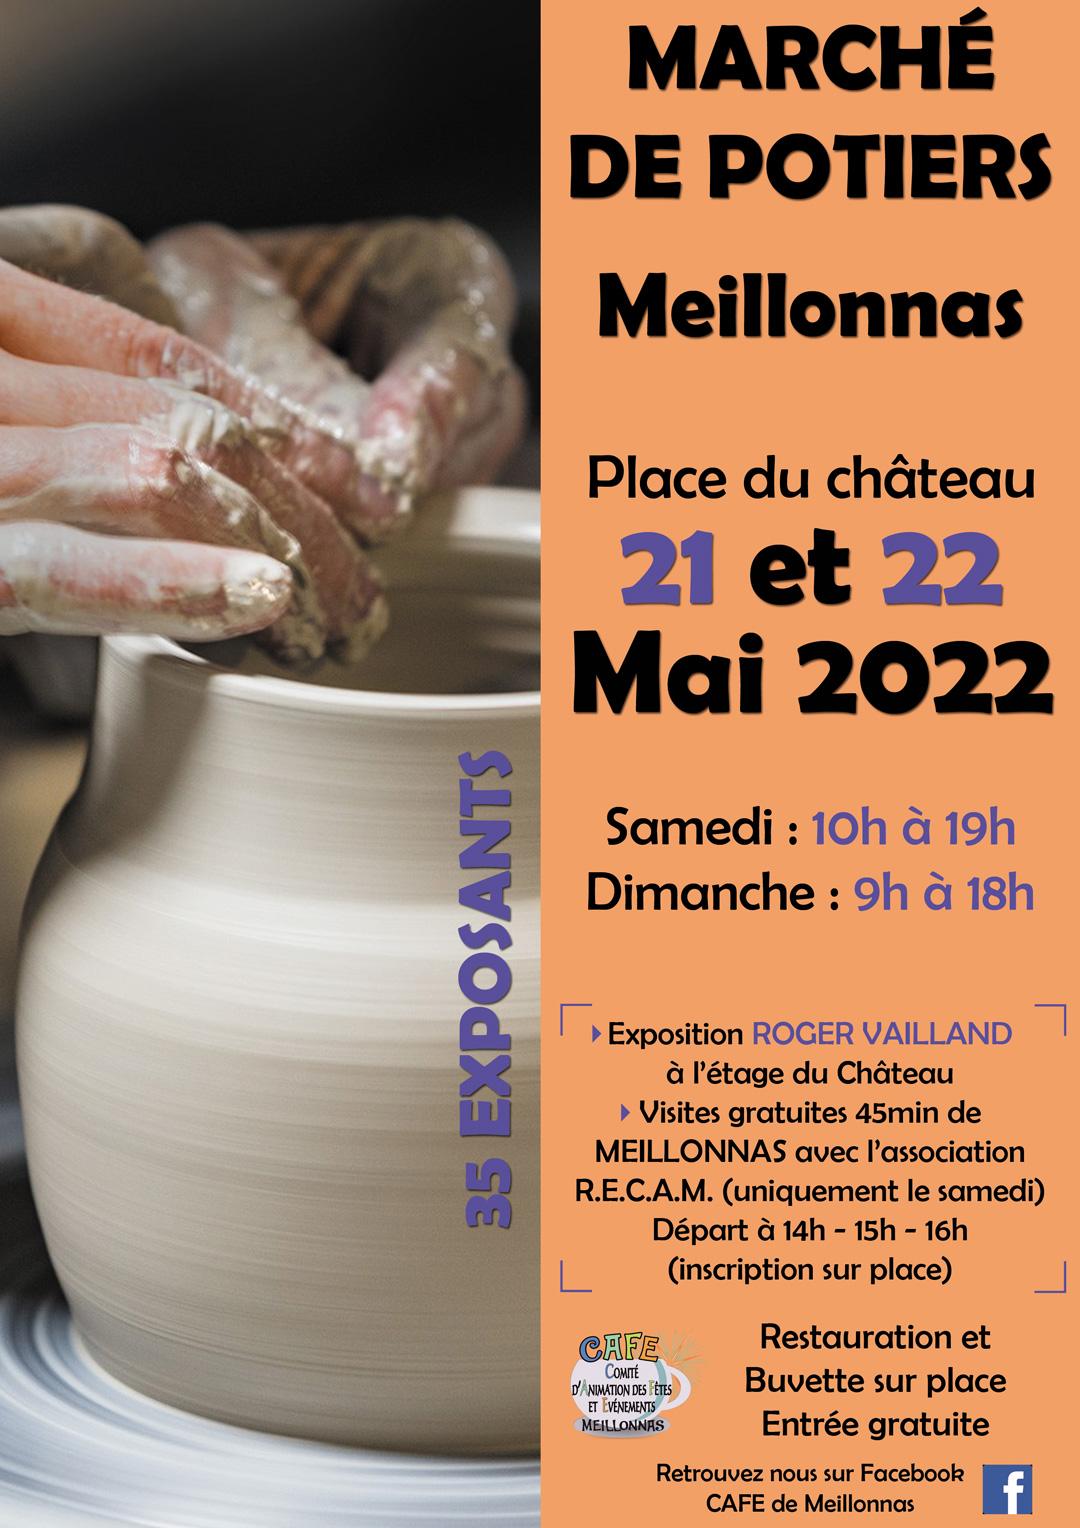 Marché de potiers - 21 et 22 mai 2022 - Meillonnas (01)